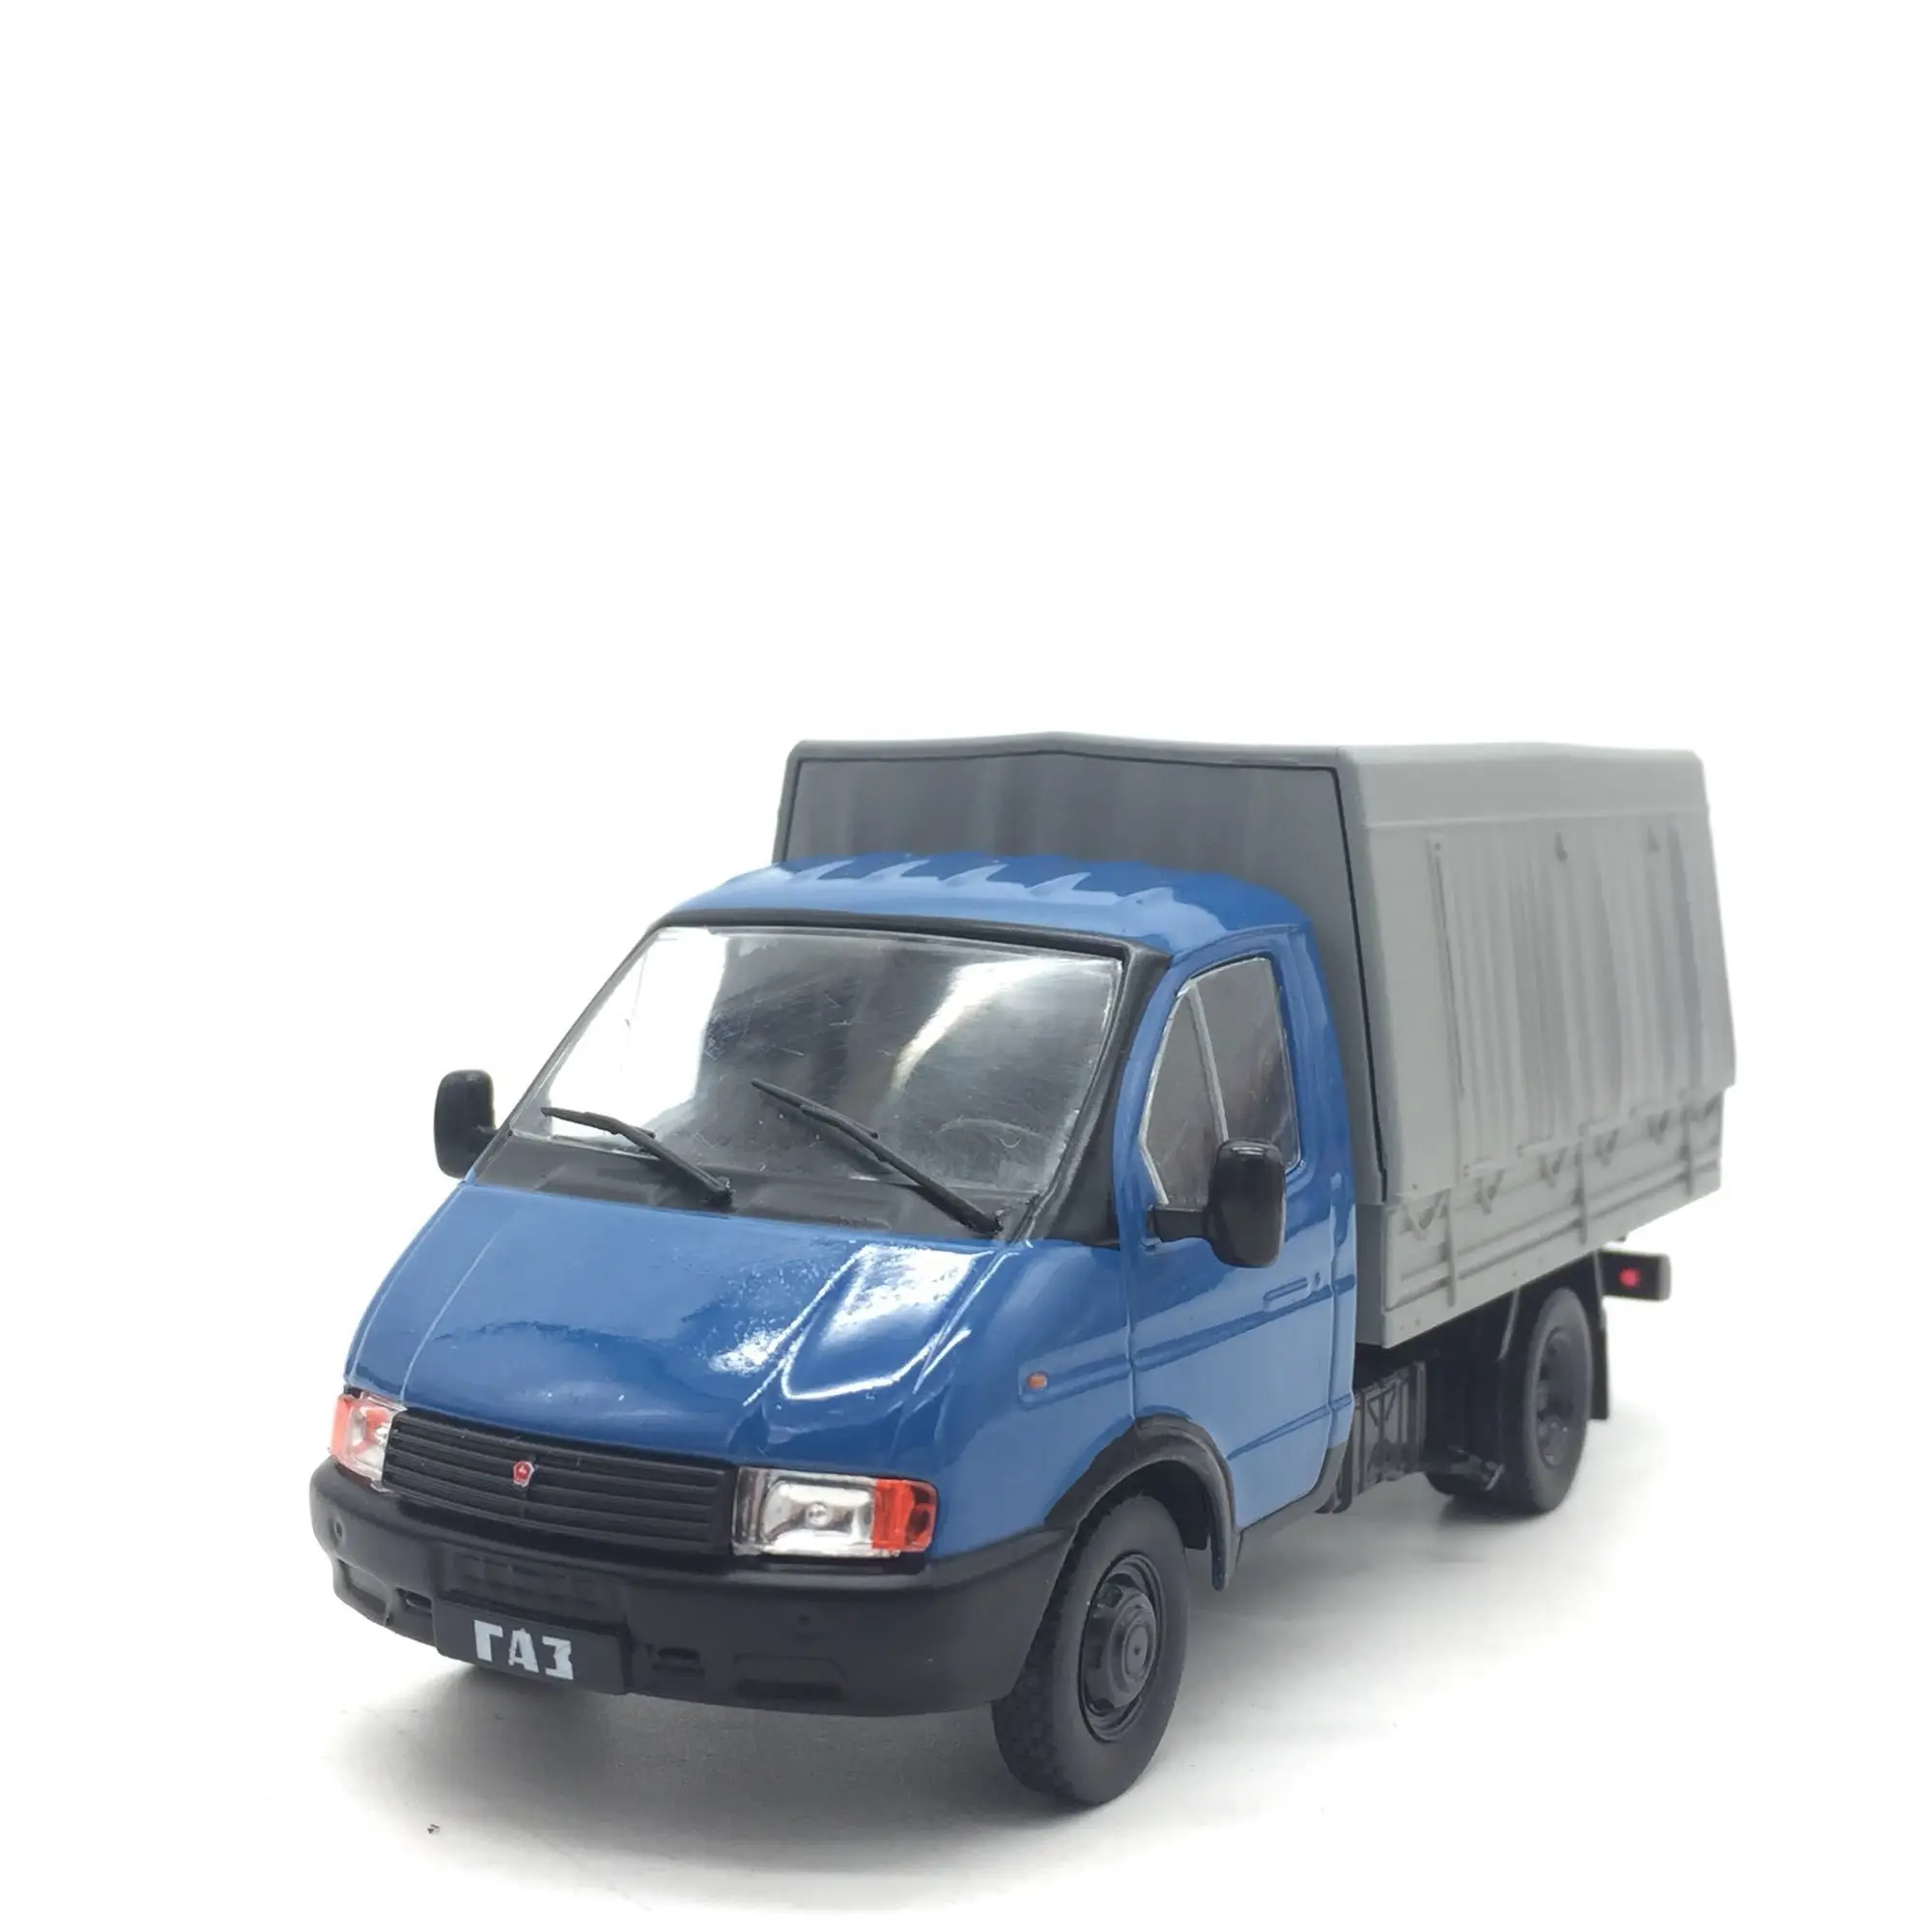 1/43 новая специальная цена литой металлический советский Маленький грузовик Настольный дисплей коллекция моделей игрушек для детей